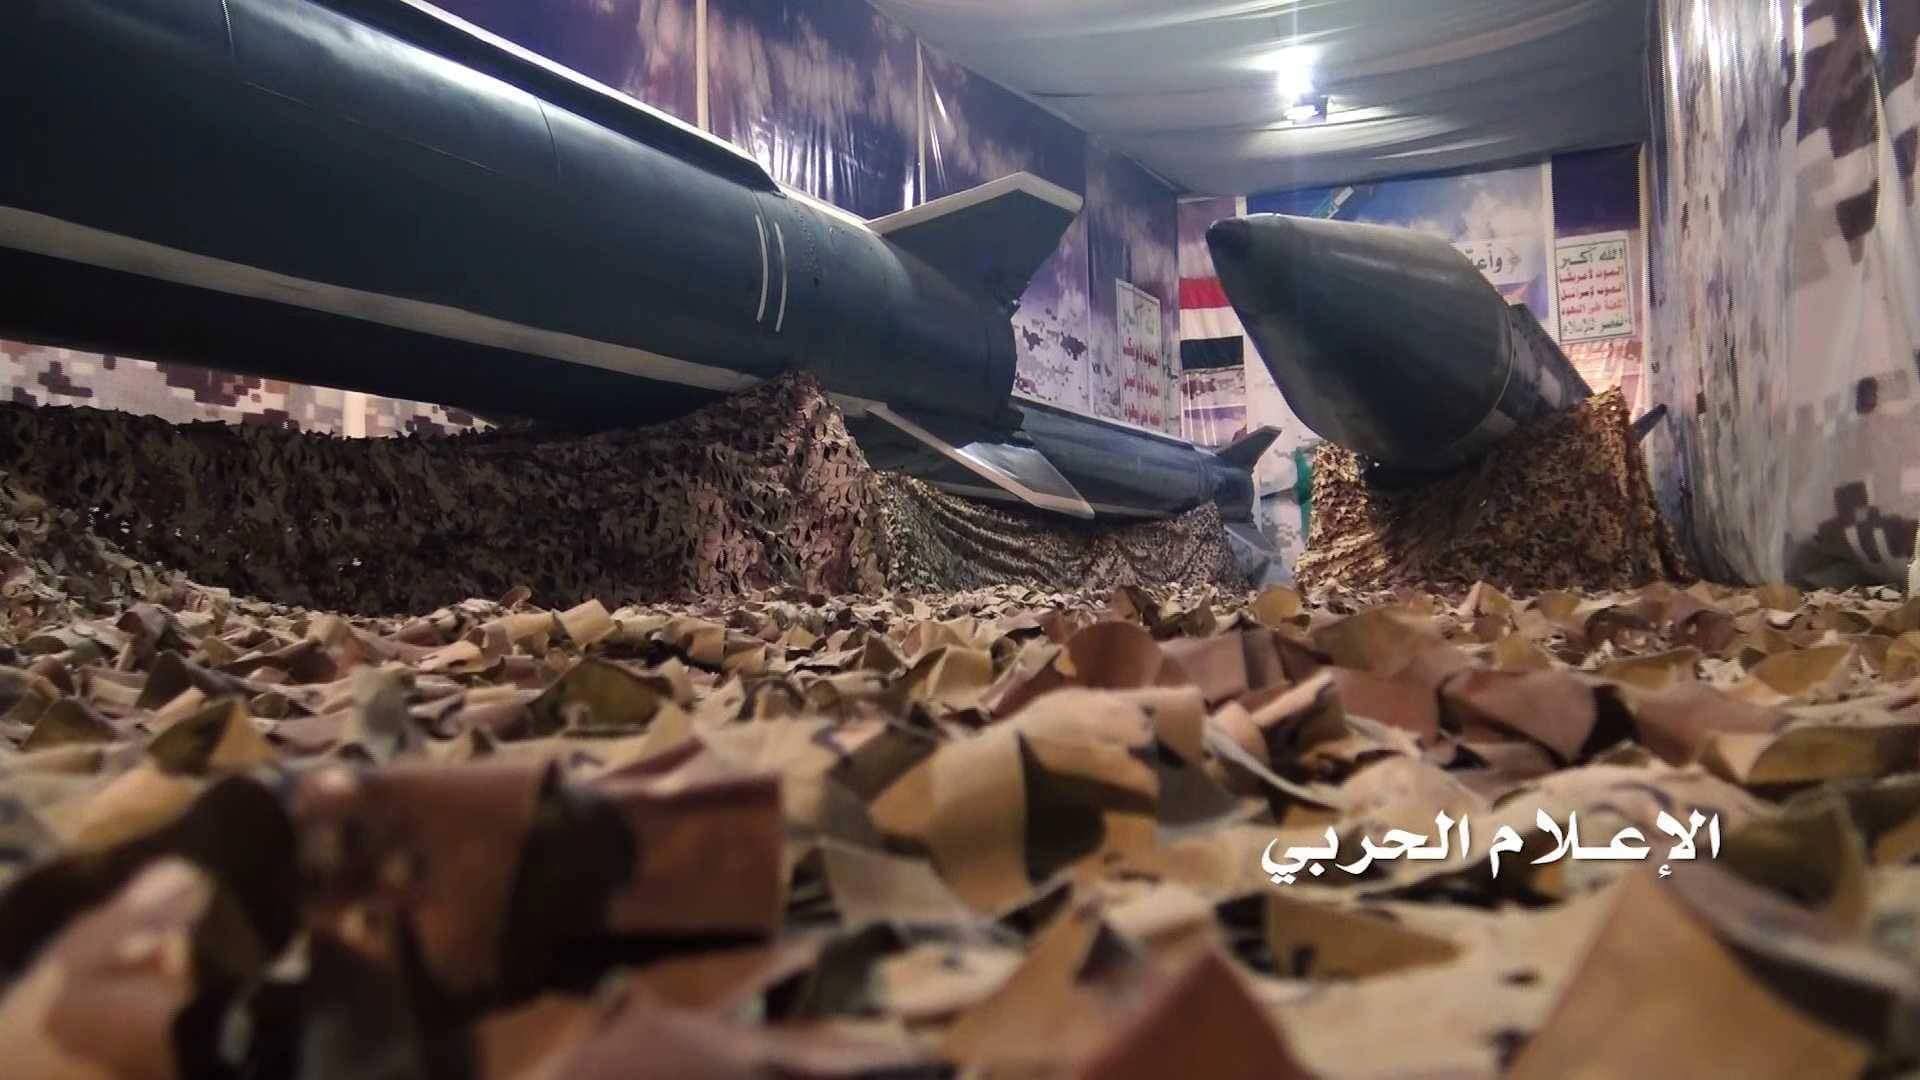 صورة من فيديو نشره الاعلام الحربي لمليشيات الحوثي لما قيل انه صا